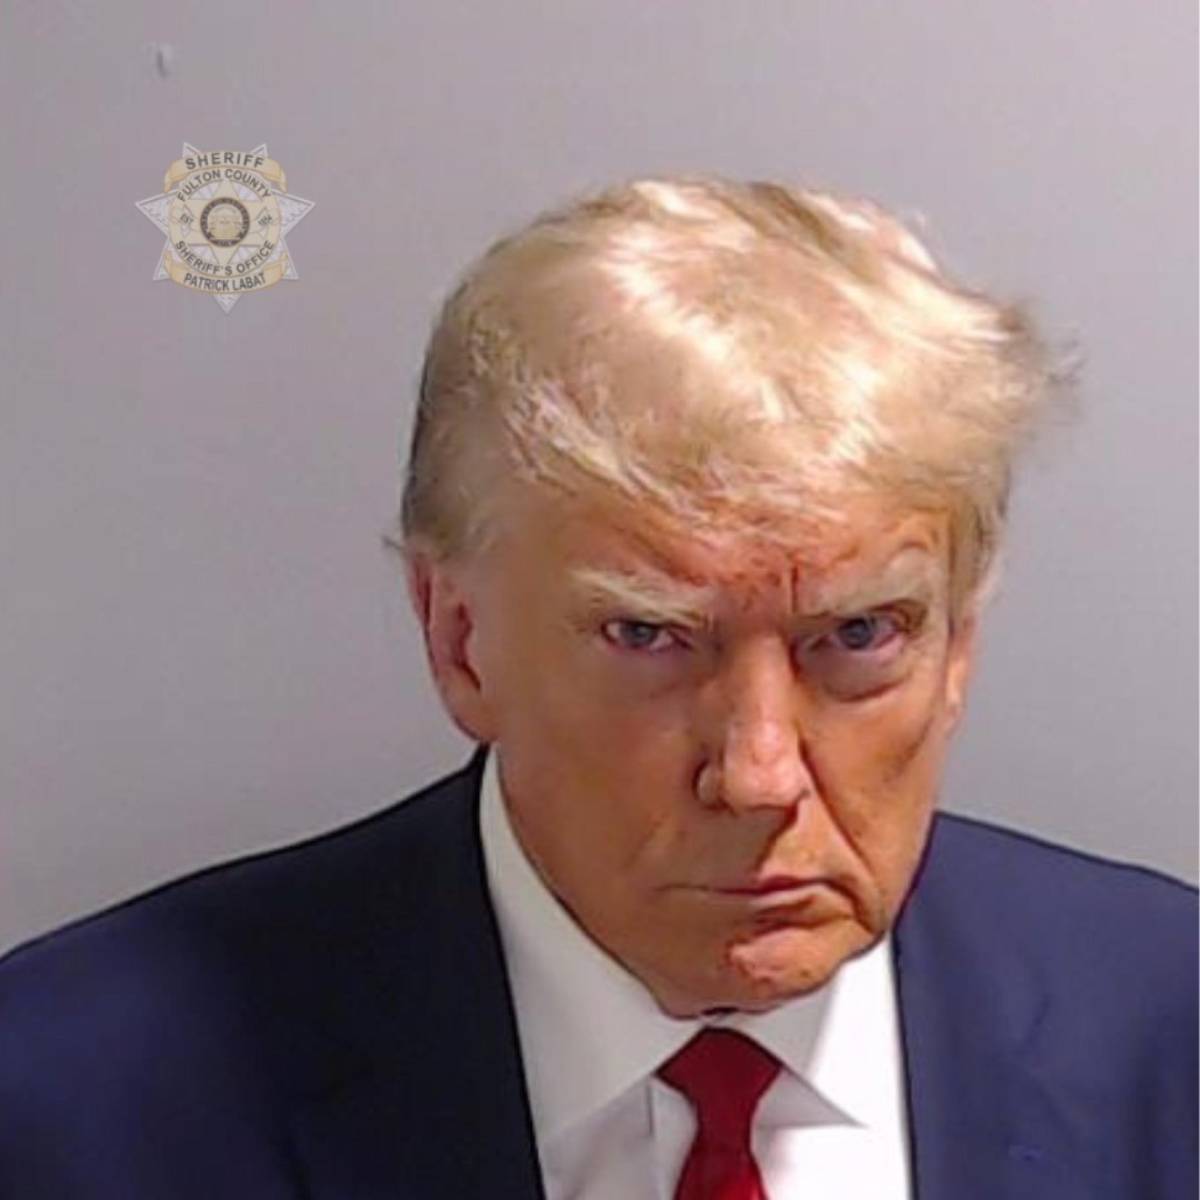 Trump "non colpevole" si sottrae al tribunale. Guai a New York: "Condannarlo senza processo"